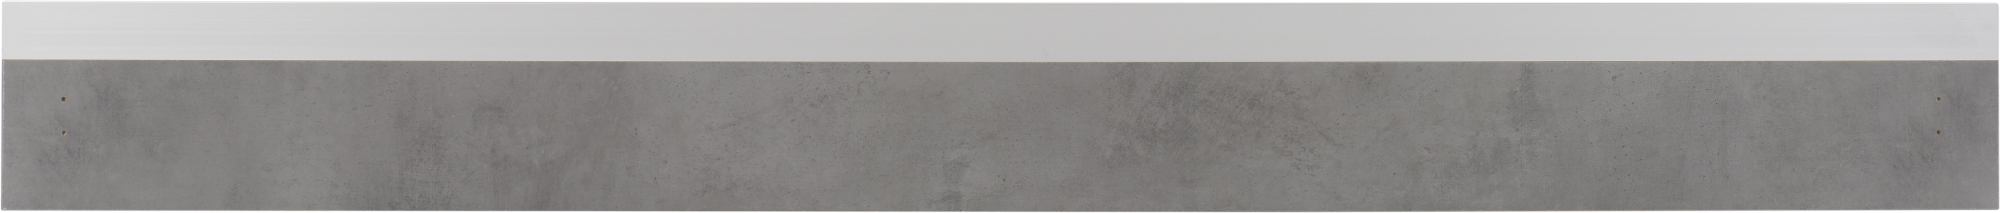 Frente para cajón mikonos cemento oscuro 119,7x12,5 cm